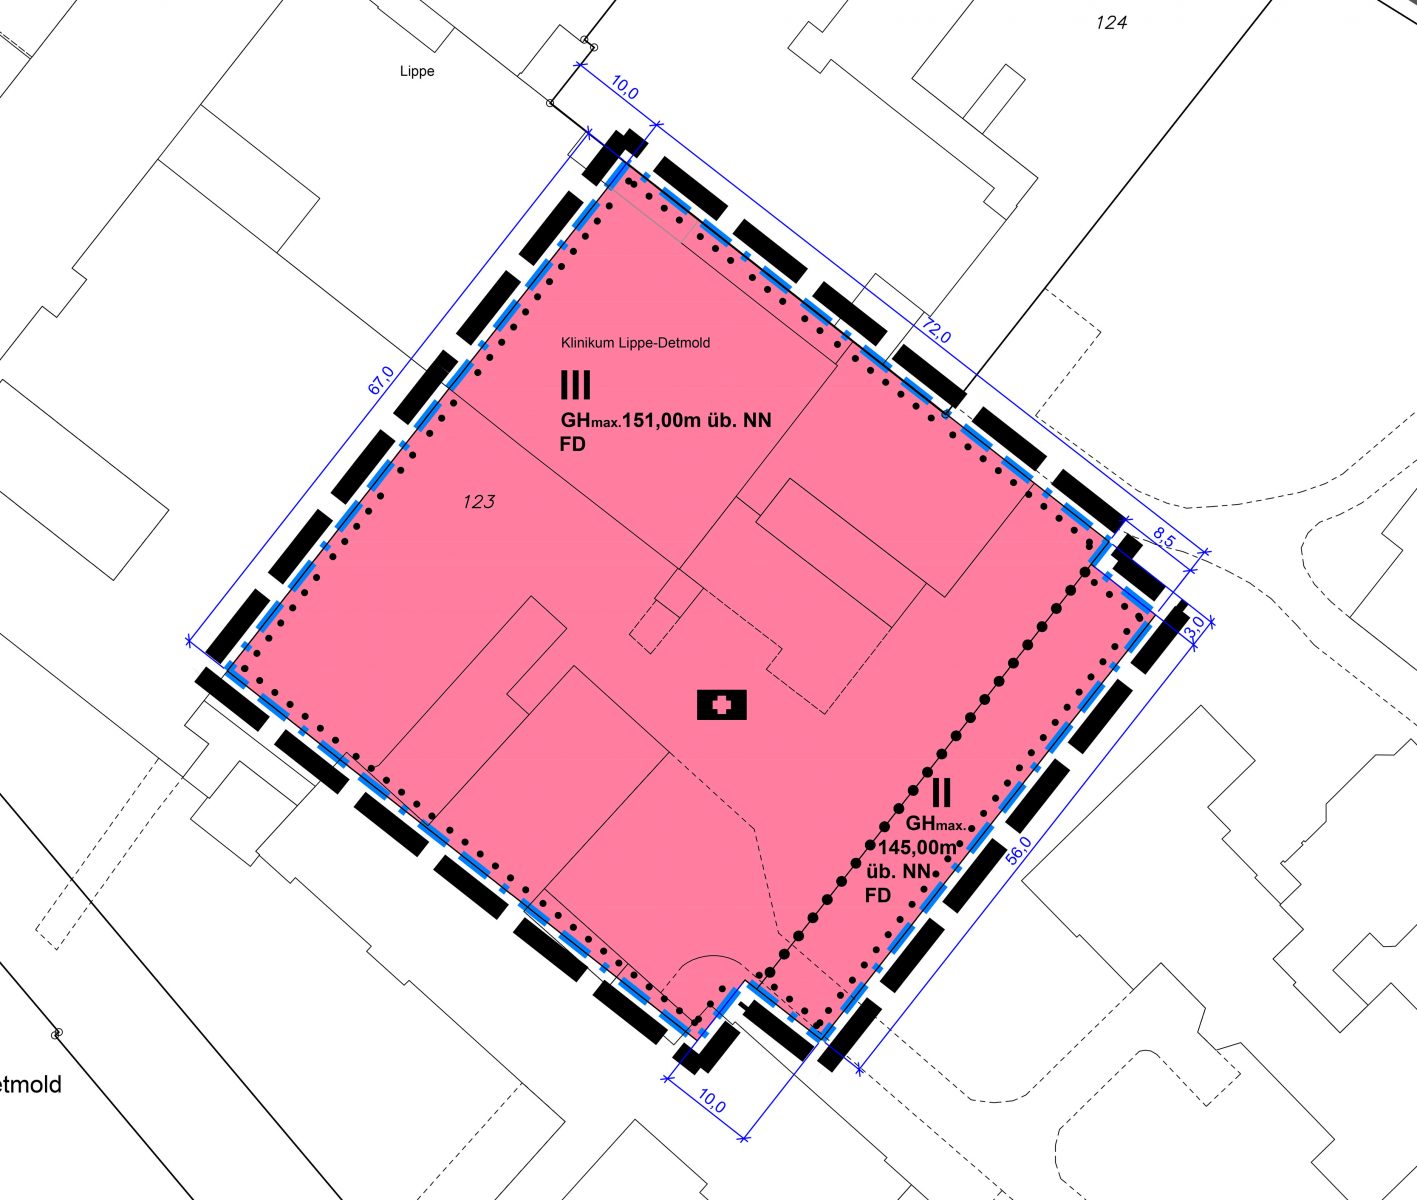 2. Änderung des Bebauungsplanes "Kreiskrankenhaus" als Grundlage für den Bau des neuen OP-Traktes am Klinikum Lippe, Detmold